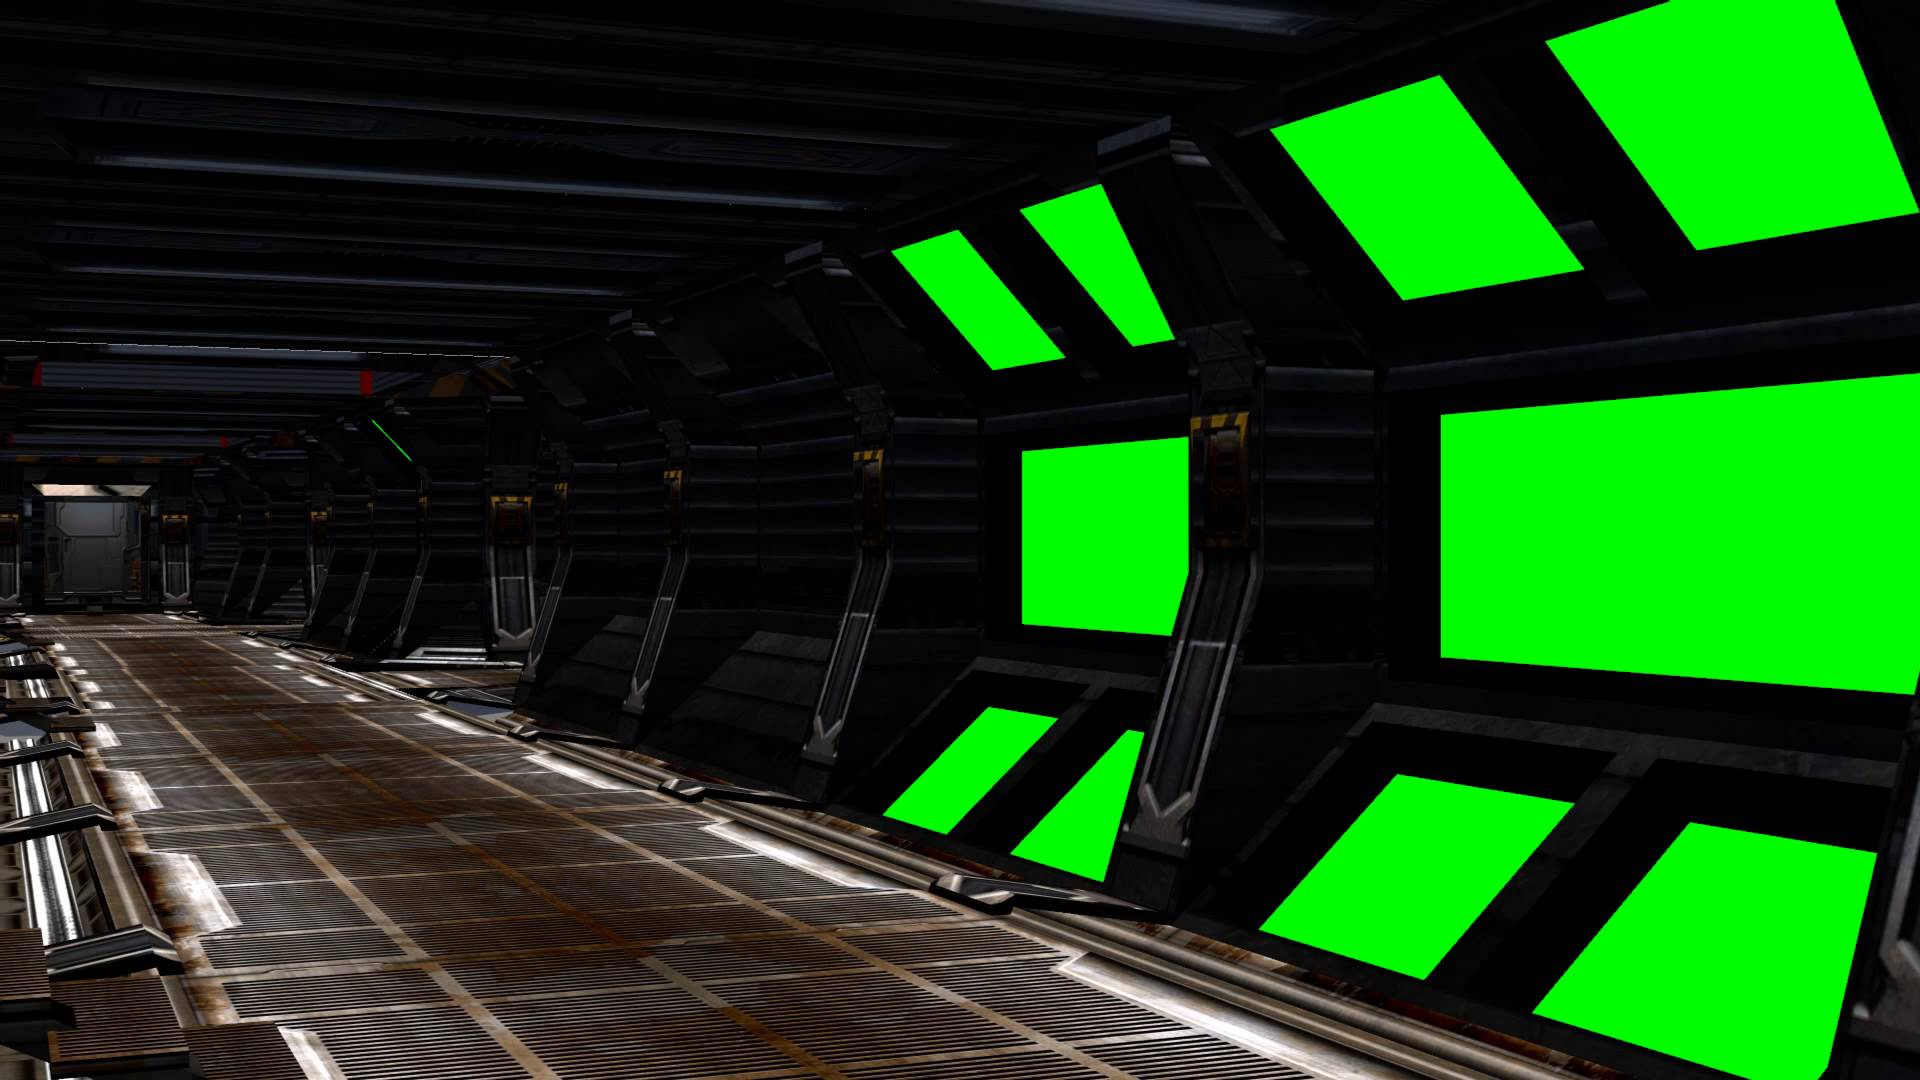 Spaceship Interior green screen set là lựa chọn hoàn hảo để bạn thể hiện tình yêu và đam mê với không gian vũ trụ. Với những chuyển động của chiếc tàu và không gian nội thất đầy sáng tạo, bạn sẽ có những trải nghiệm tuyệt vời nhất.